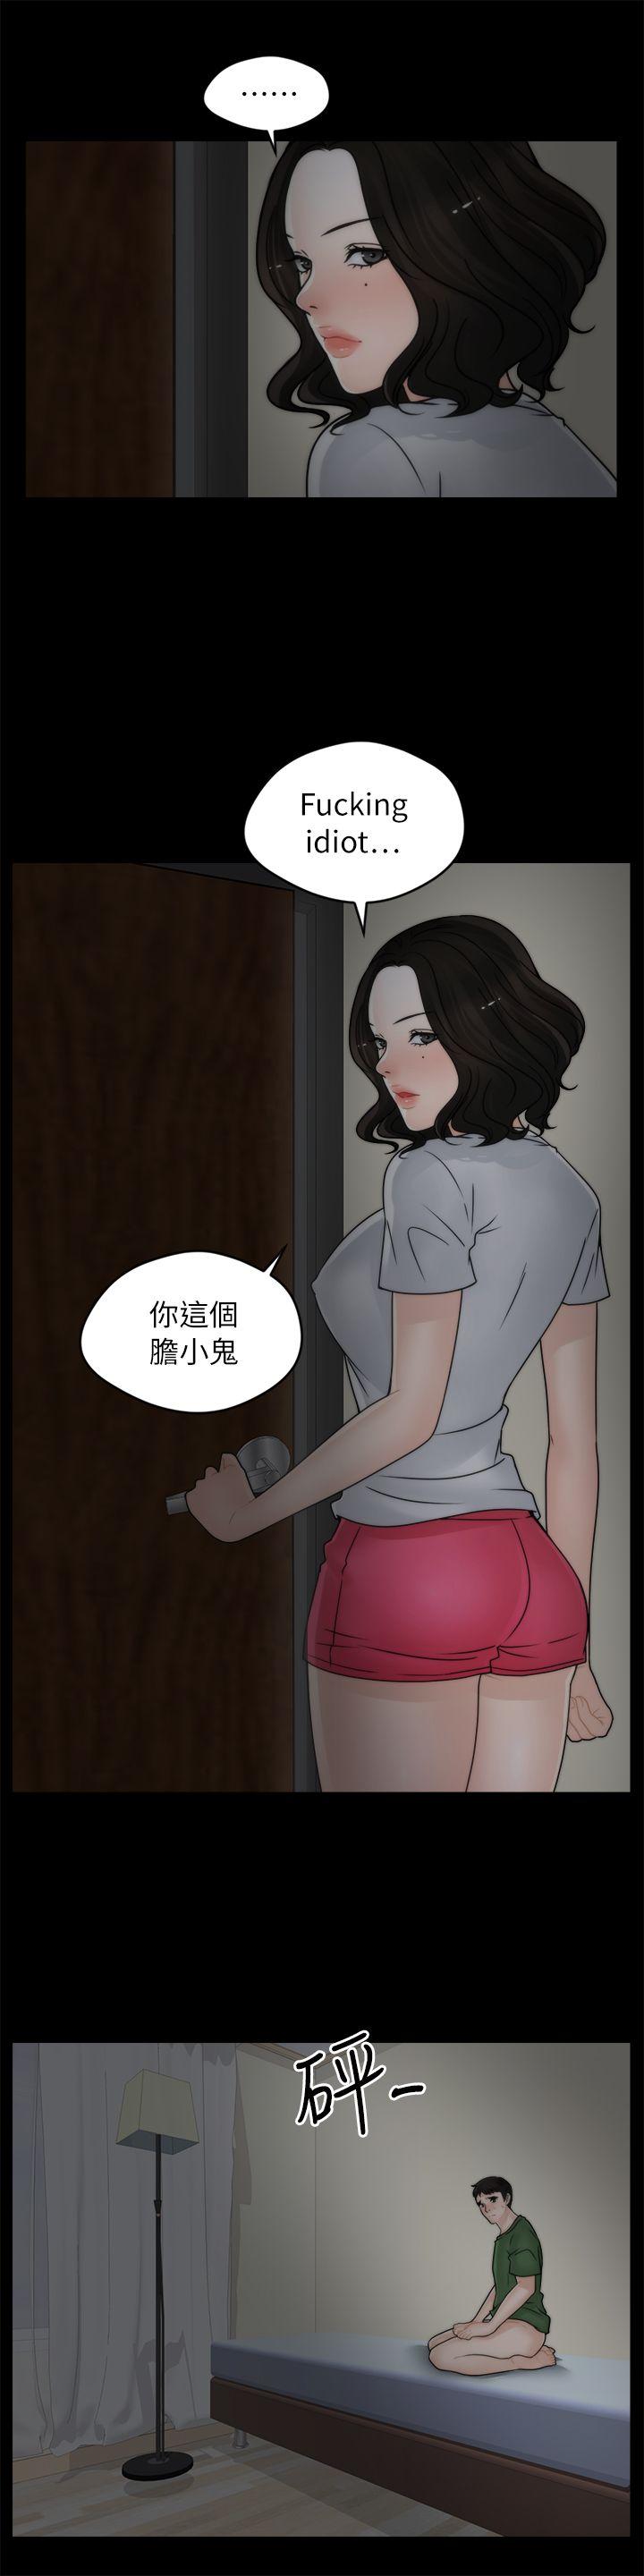 韩国污漫画 偷偷愛 第9话 10